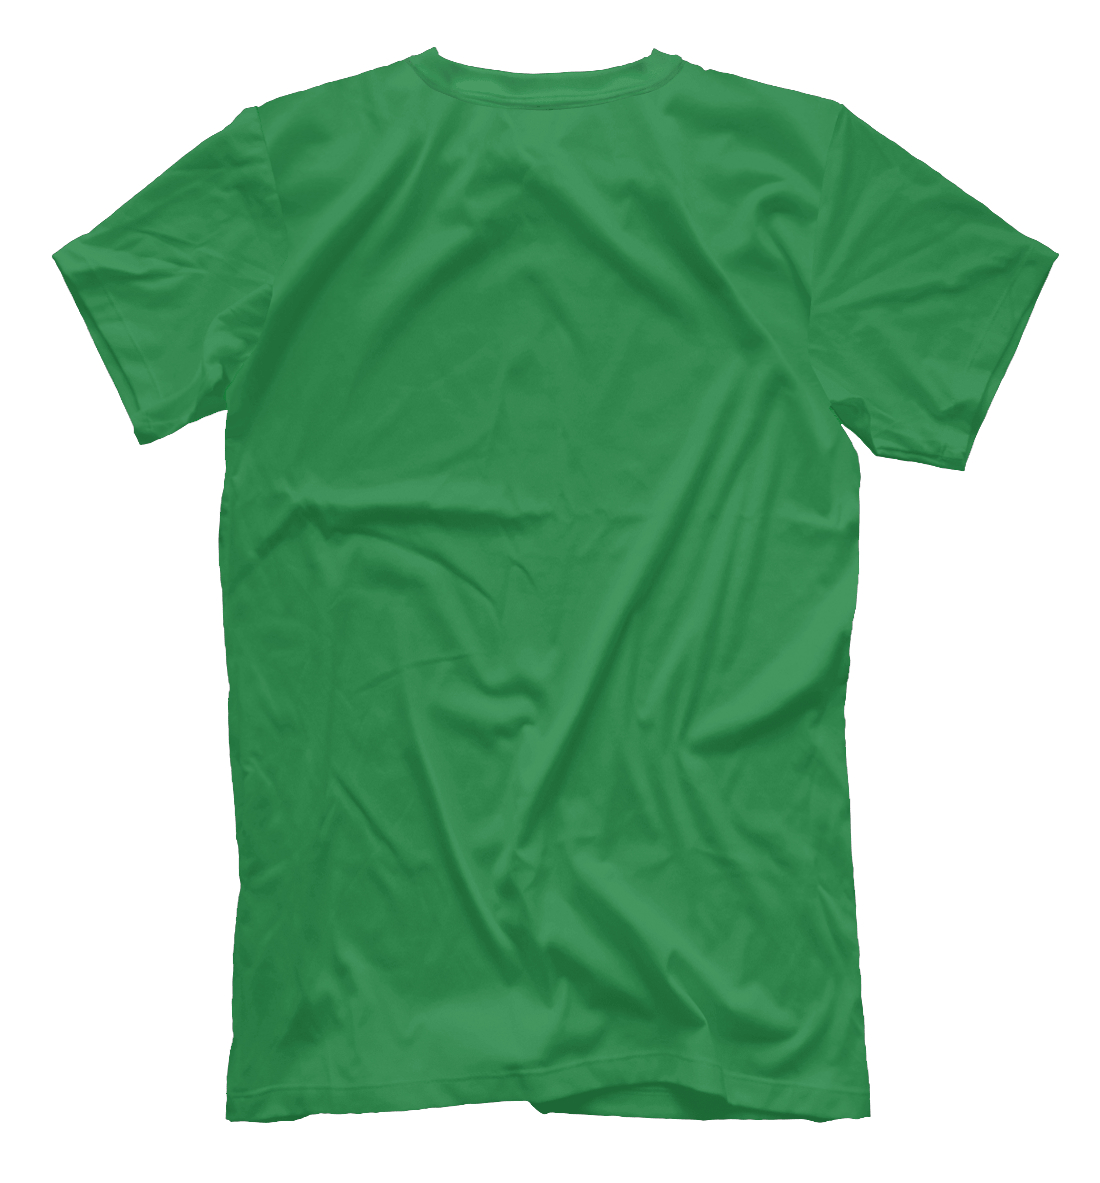 Мужская футболка с принтом Grove street4life  - фото 2-спина